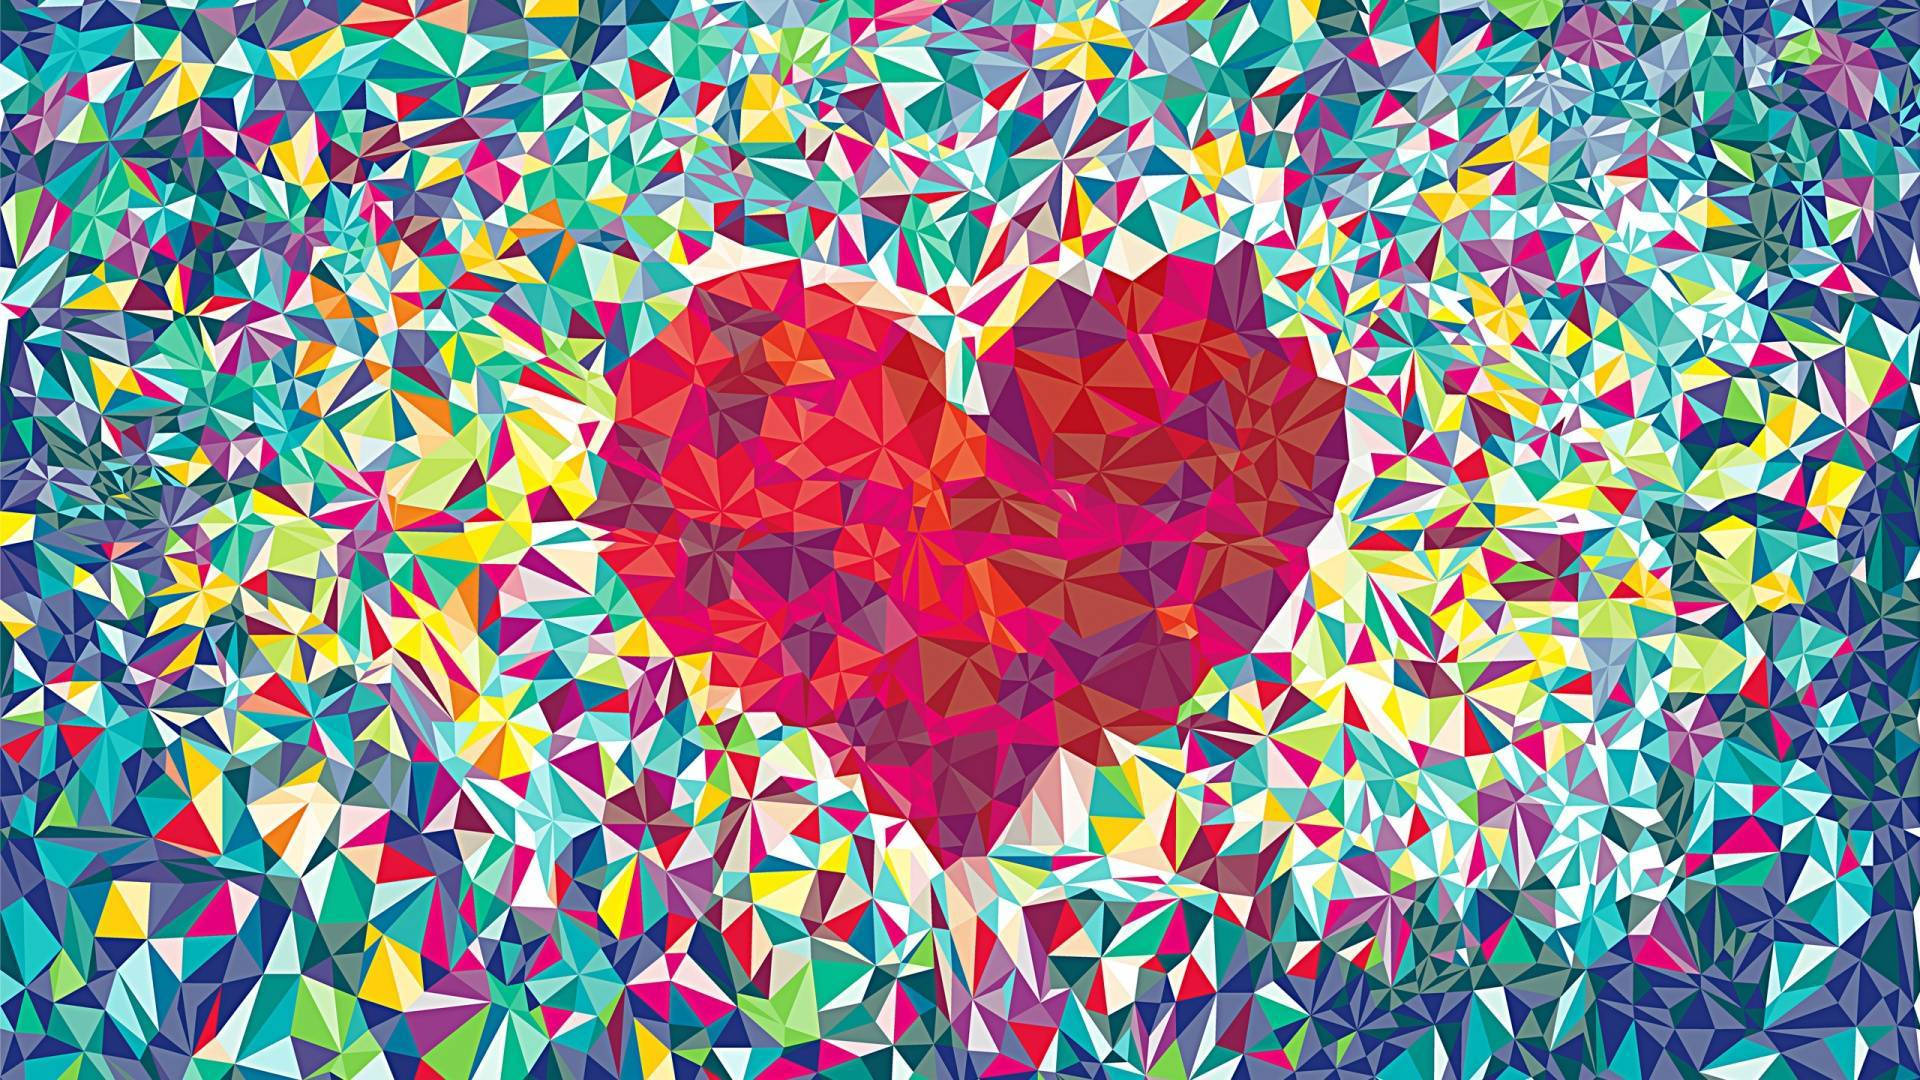 Kpop Mosaic Heart Art